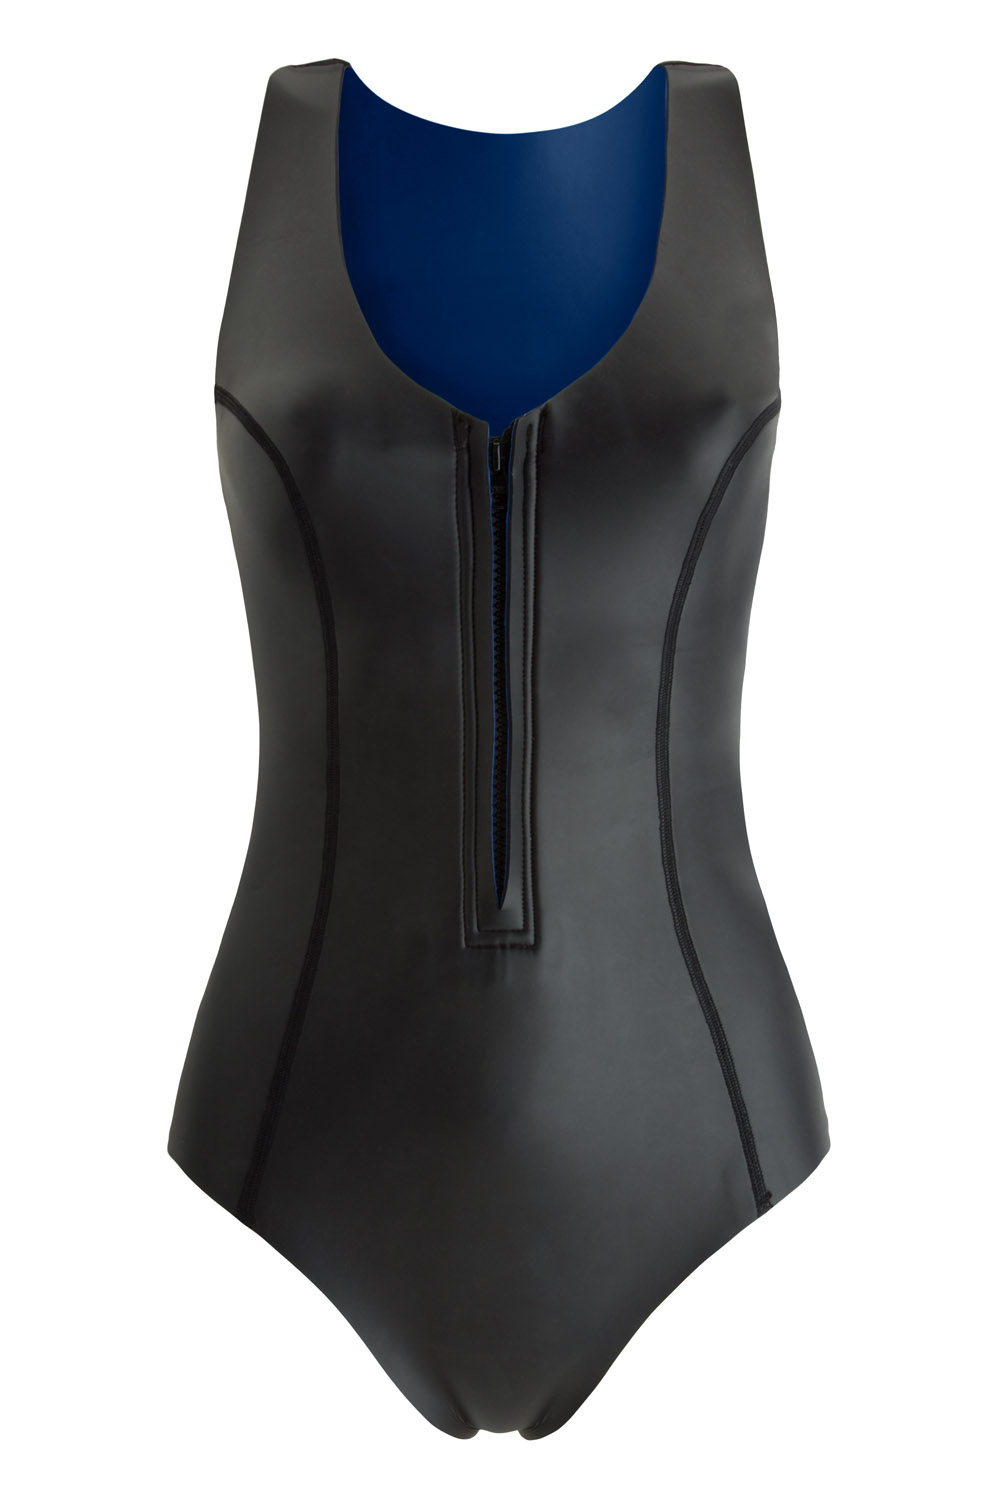 Sustainable Luxury Swimwear / Ropa de baño sostenible, neoprene wetsuit / bañador neopreno, surf ecoprene. Sylvia in black by NOW_THEN,